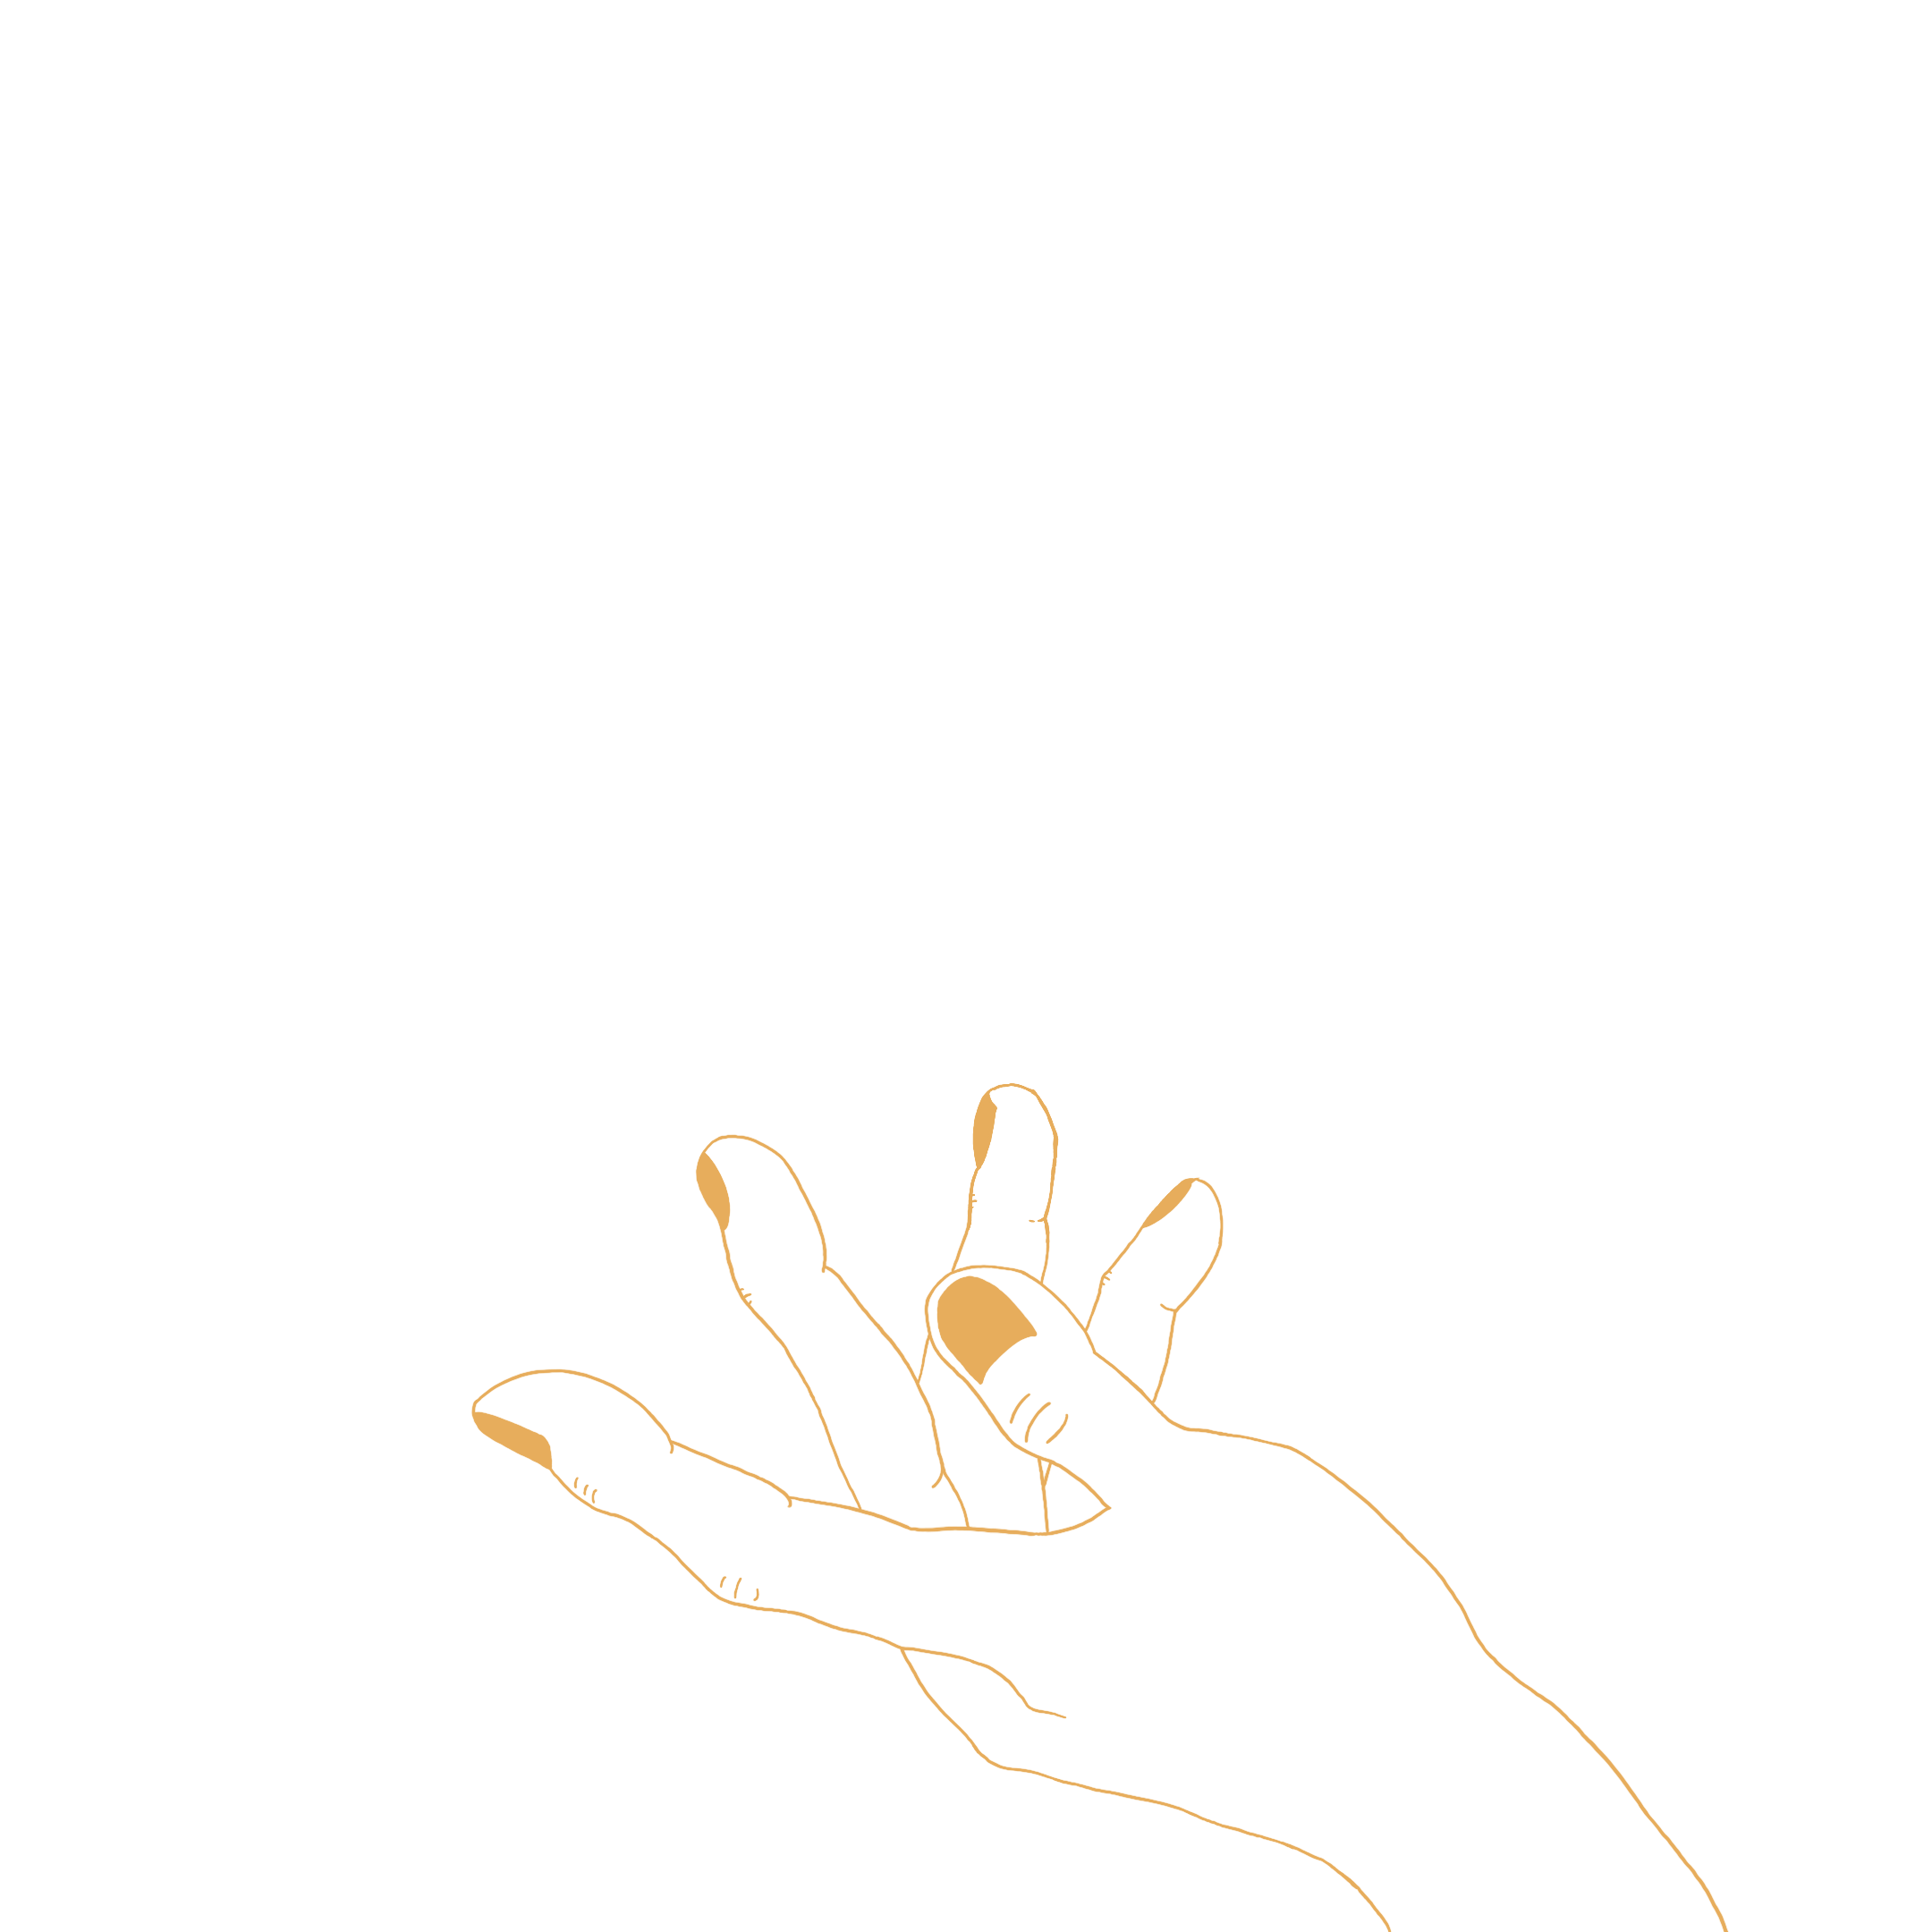 line art of an open hand underneath a ball of fire